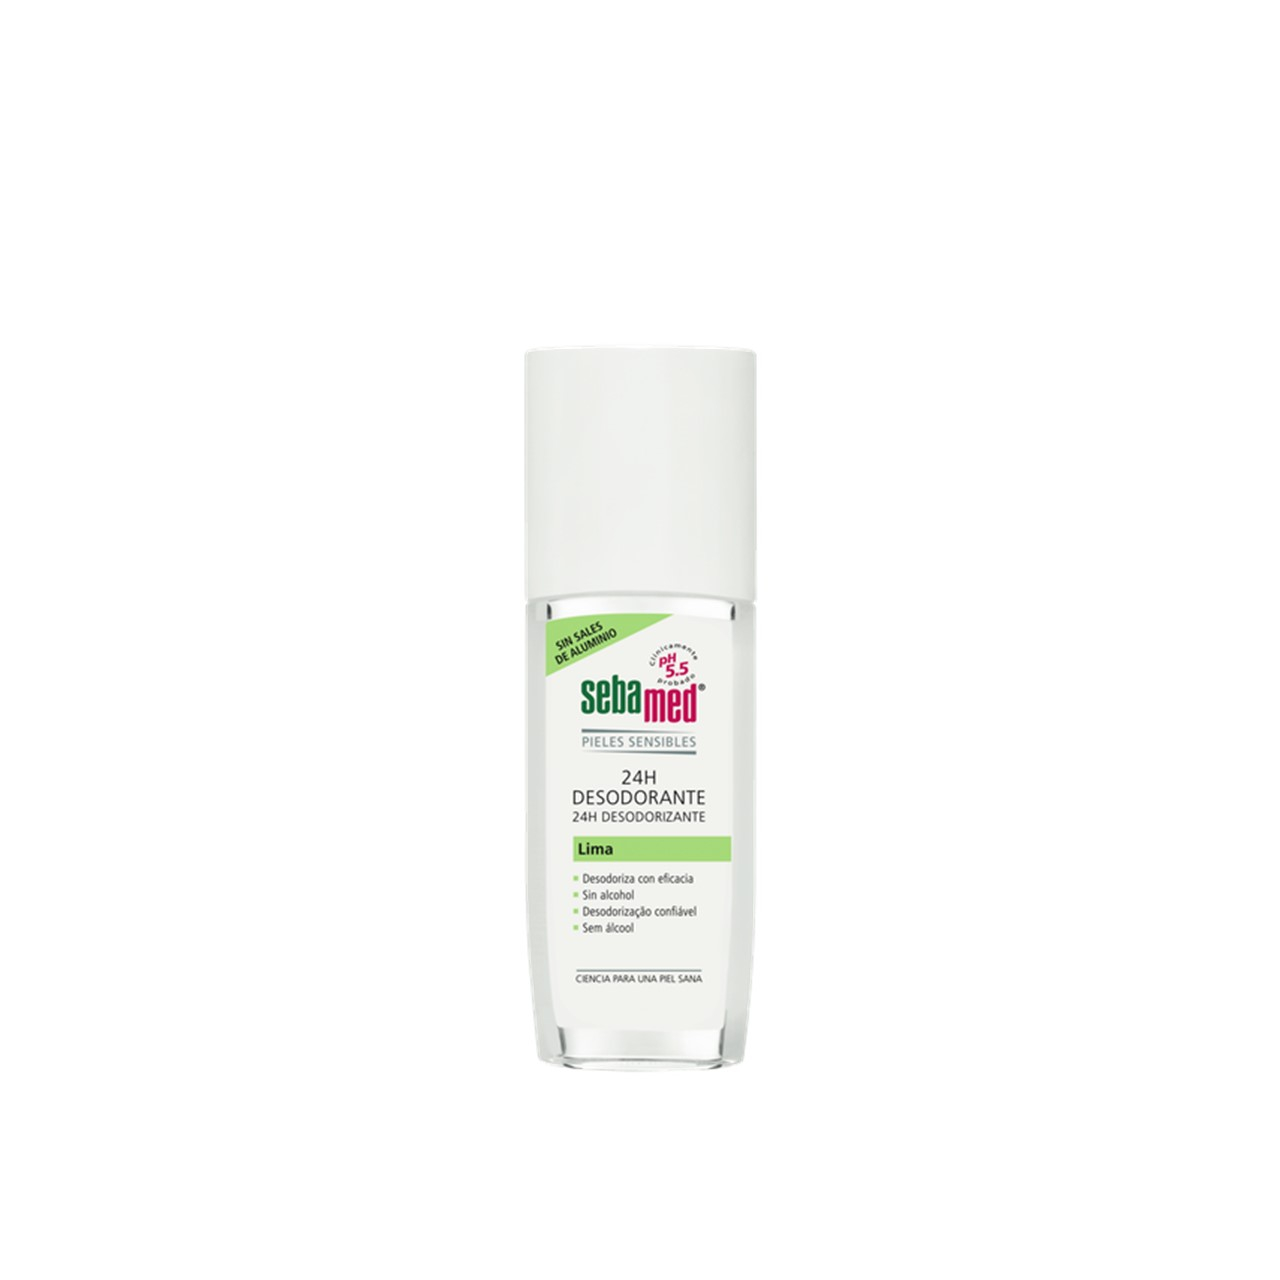 Sebamed 24H Deodorant Lime Spray 75ml (2.54fl oz)